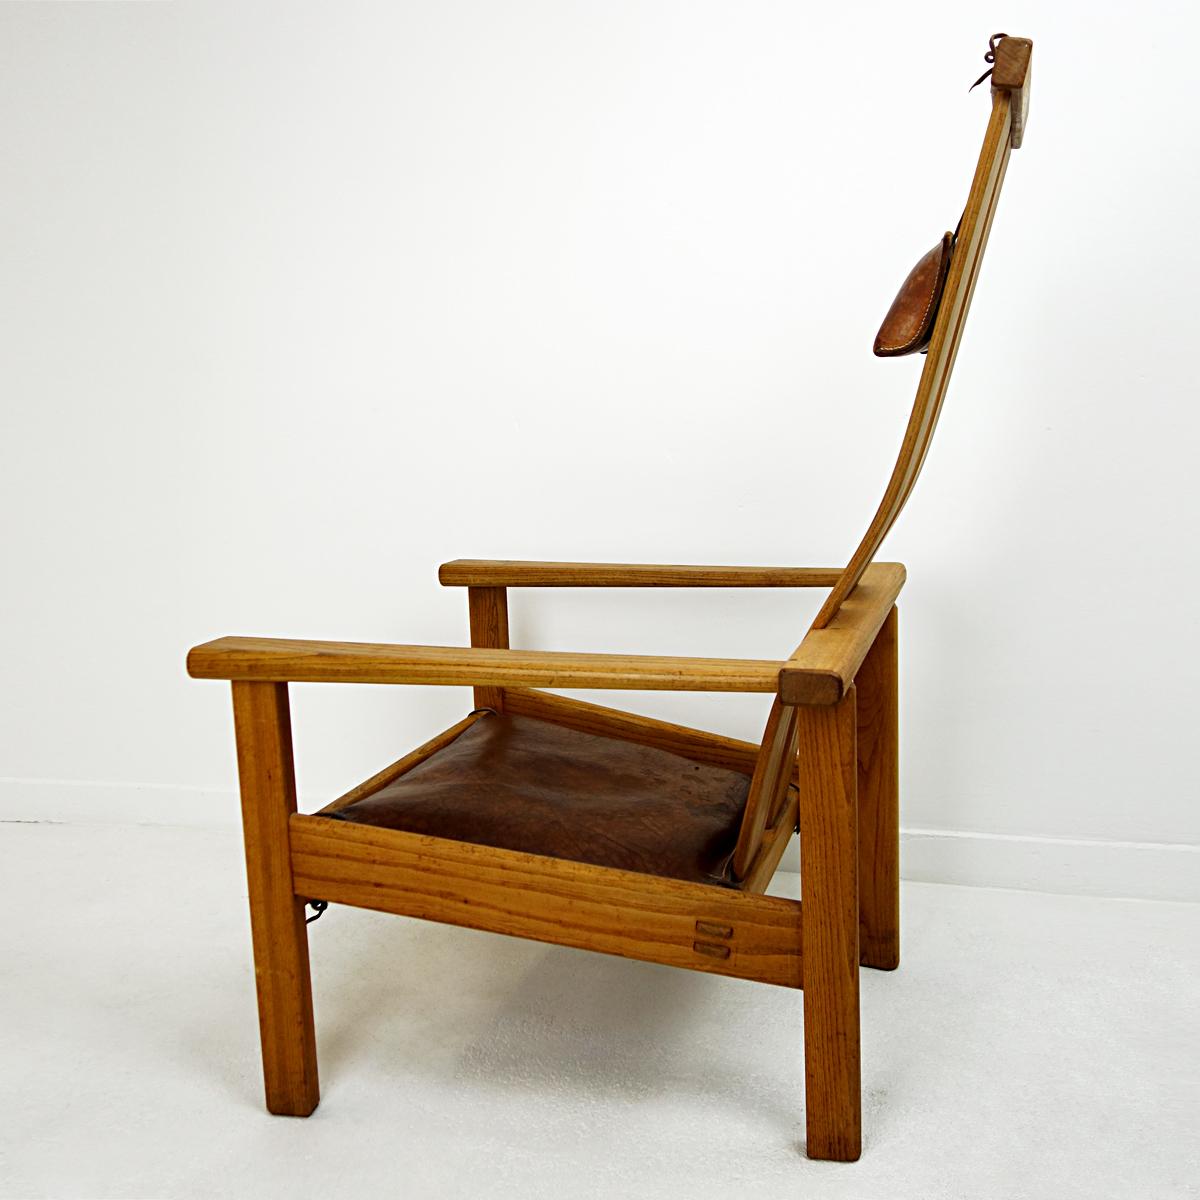 Dieser Loungesessel ist wirklich einmalig. Der niederländische Designer Stefan During stellt seine Entwürfe nur einmal her. Der schön organisch gebogene Rücken und die Sitzfläche sitzen in einem stabilen Rahmen. Die Kopf- und Sitzkissen sind aus